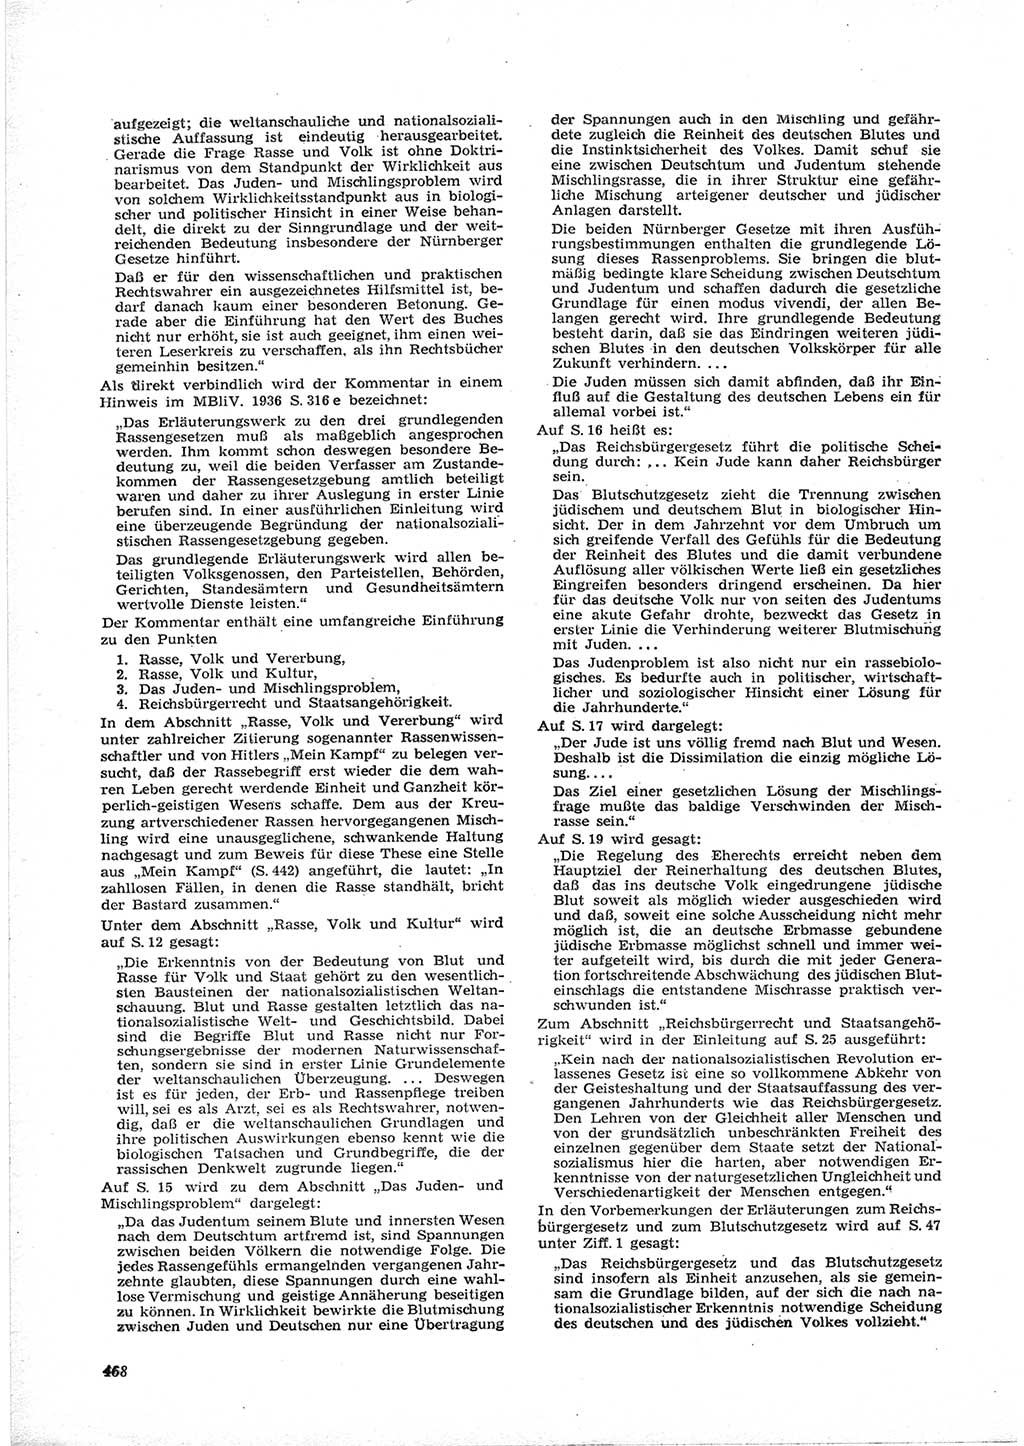 Neue Justiz (NJ), Zeitschrift für Recht und Rechtswissenschaft [Deutsche Demokratische Republik (DDR)], 17. Jahrgang 1963, Seite 468 (NJ DDR 1963, S. 468)